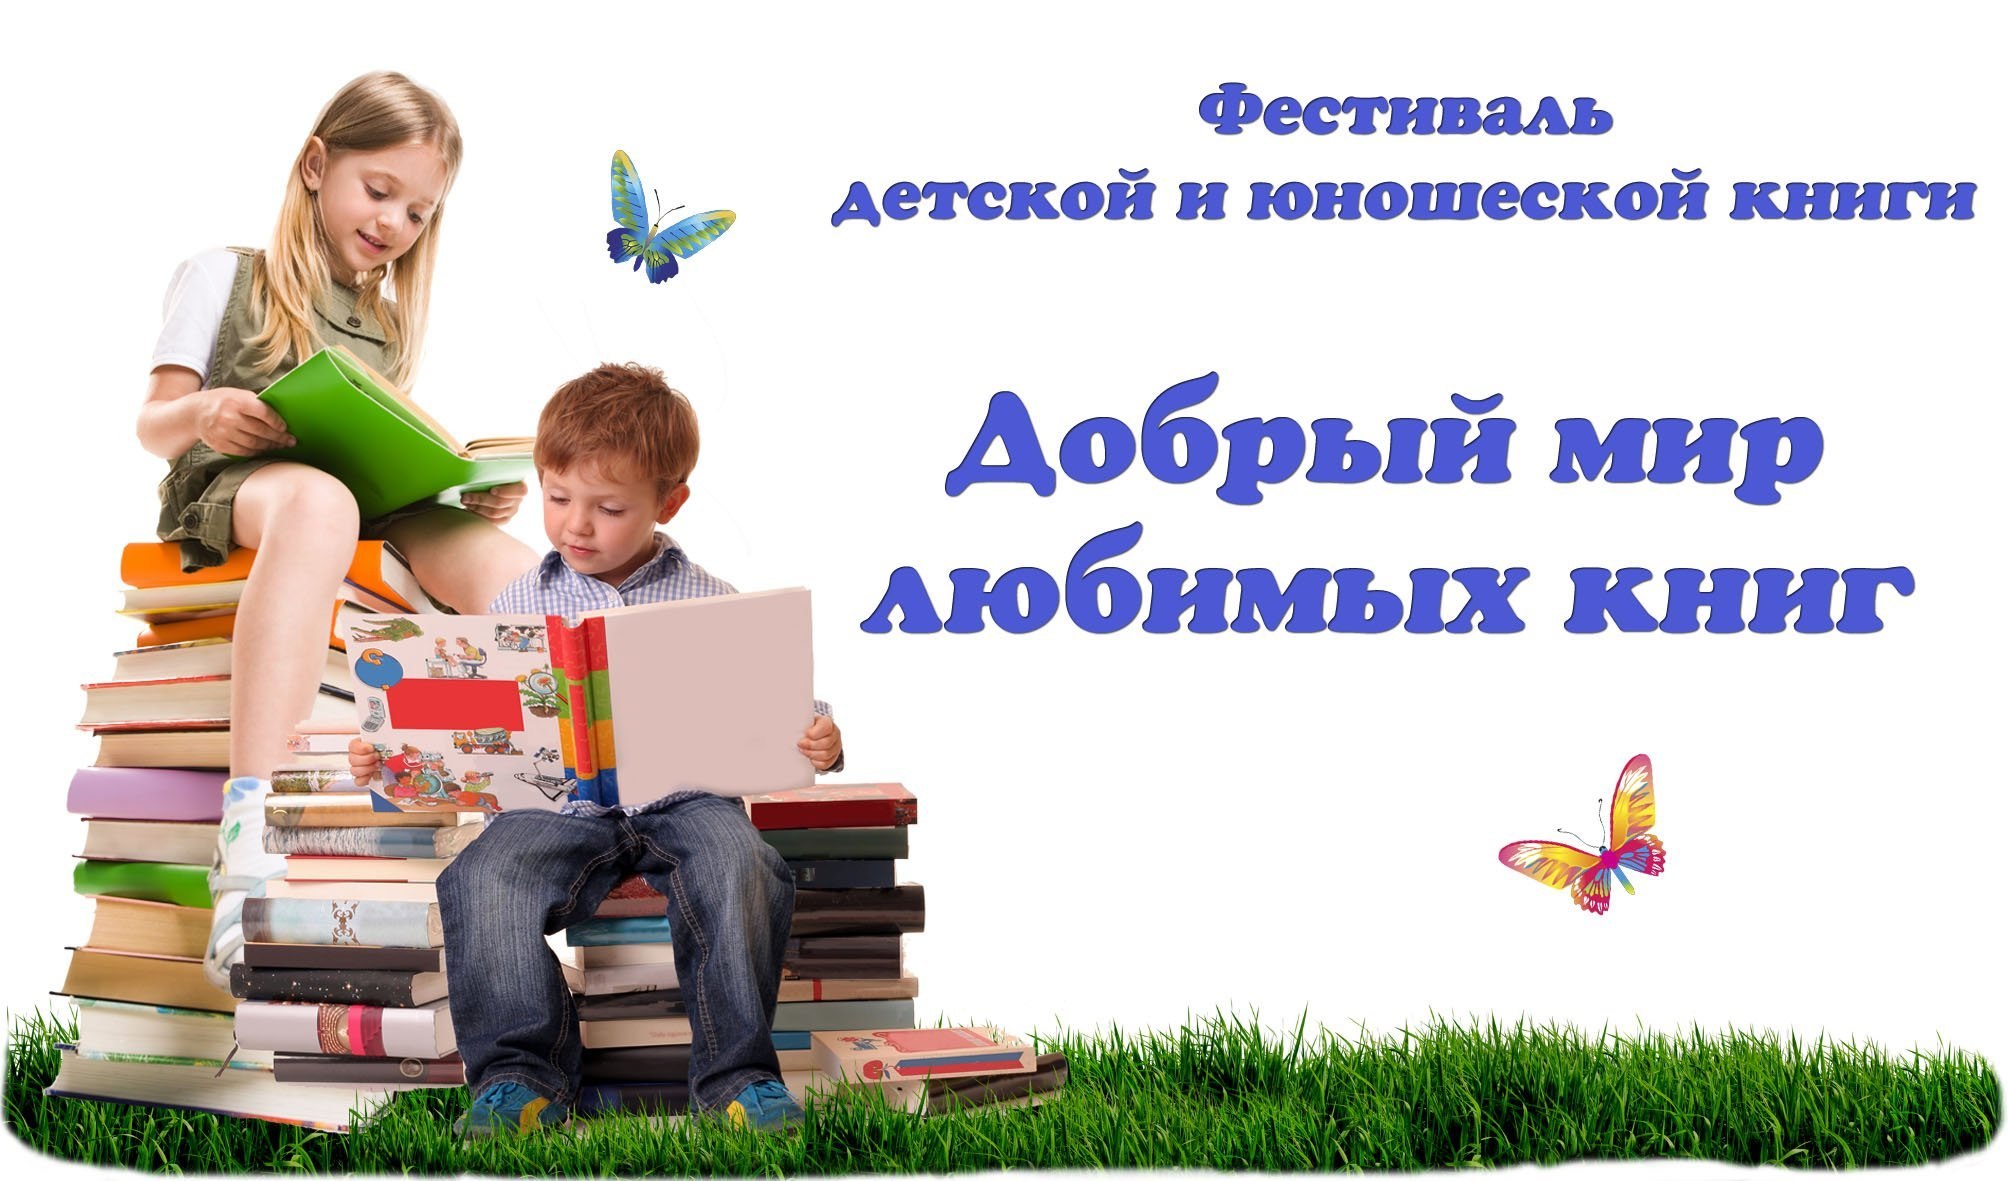 Информация через книгу. Международный день детской книги. Мир детской книги в библиотеке. Фон неделя детской книги в библиотеке. День чтения книги.